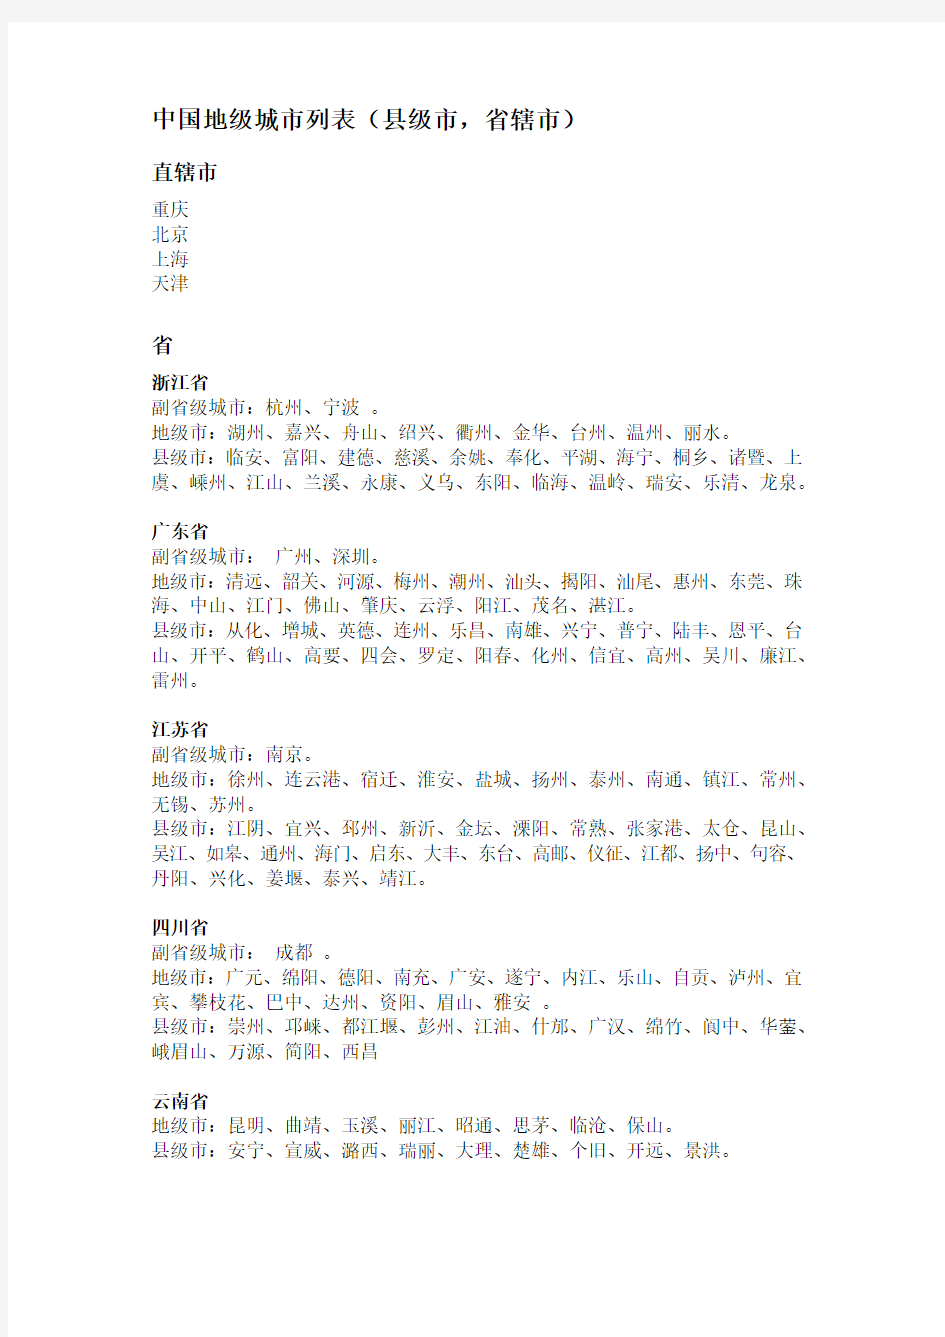 中国地级城市列表(县级市